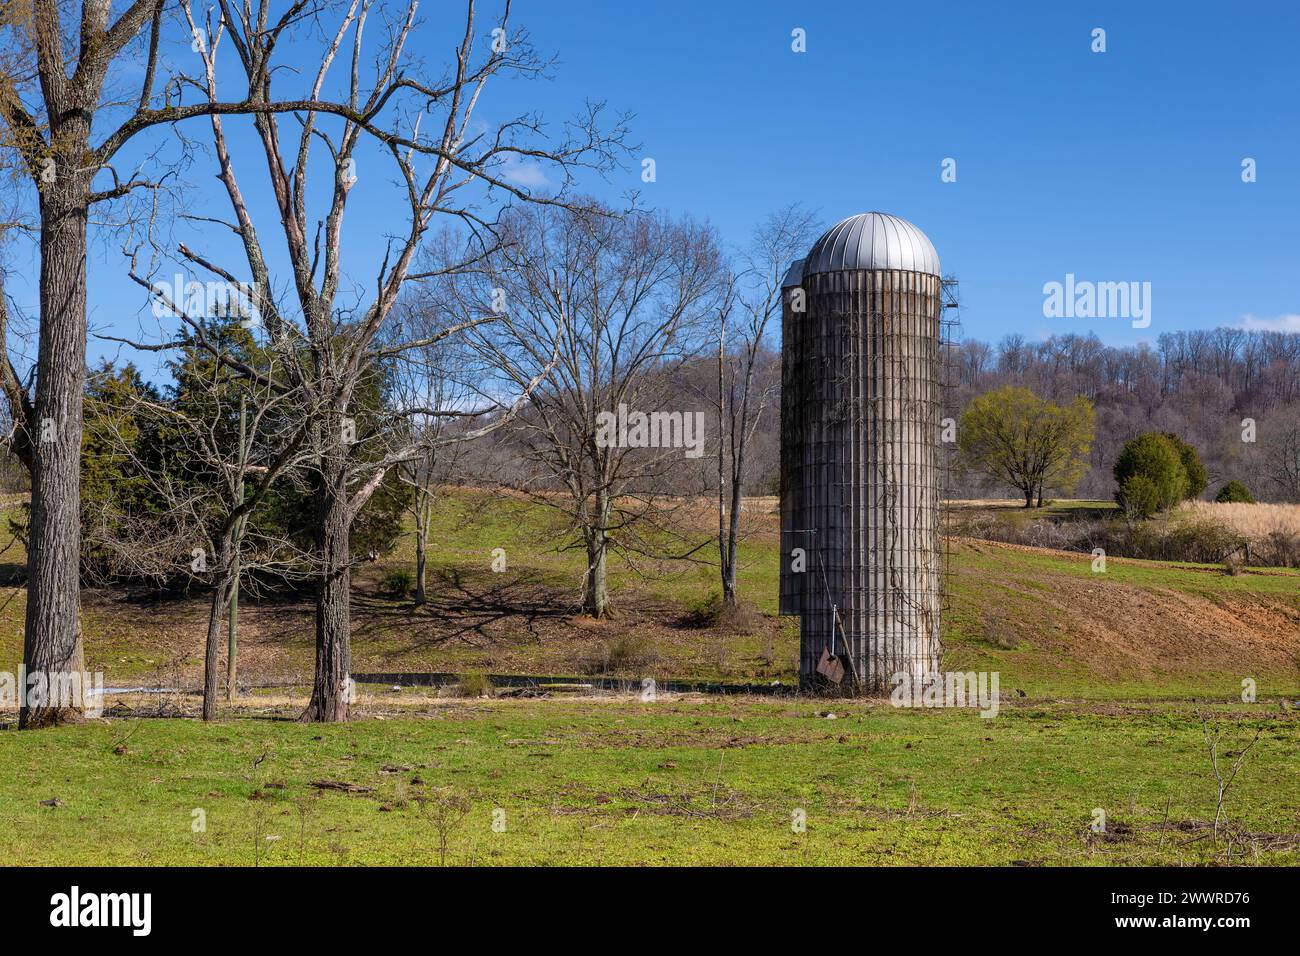 Landschaftliche Sicht auf landwirtschaftliches Land und zwei Silos unter blauem Himmel in der ländlichen Landschaft Virginias. Stockfoto